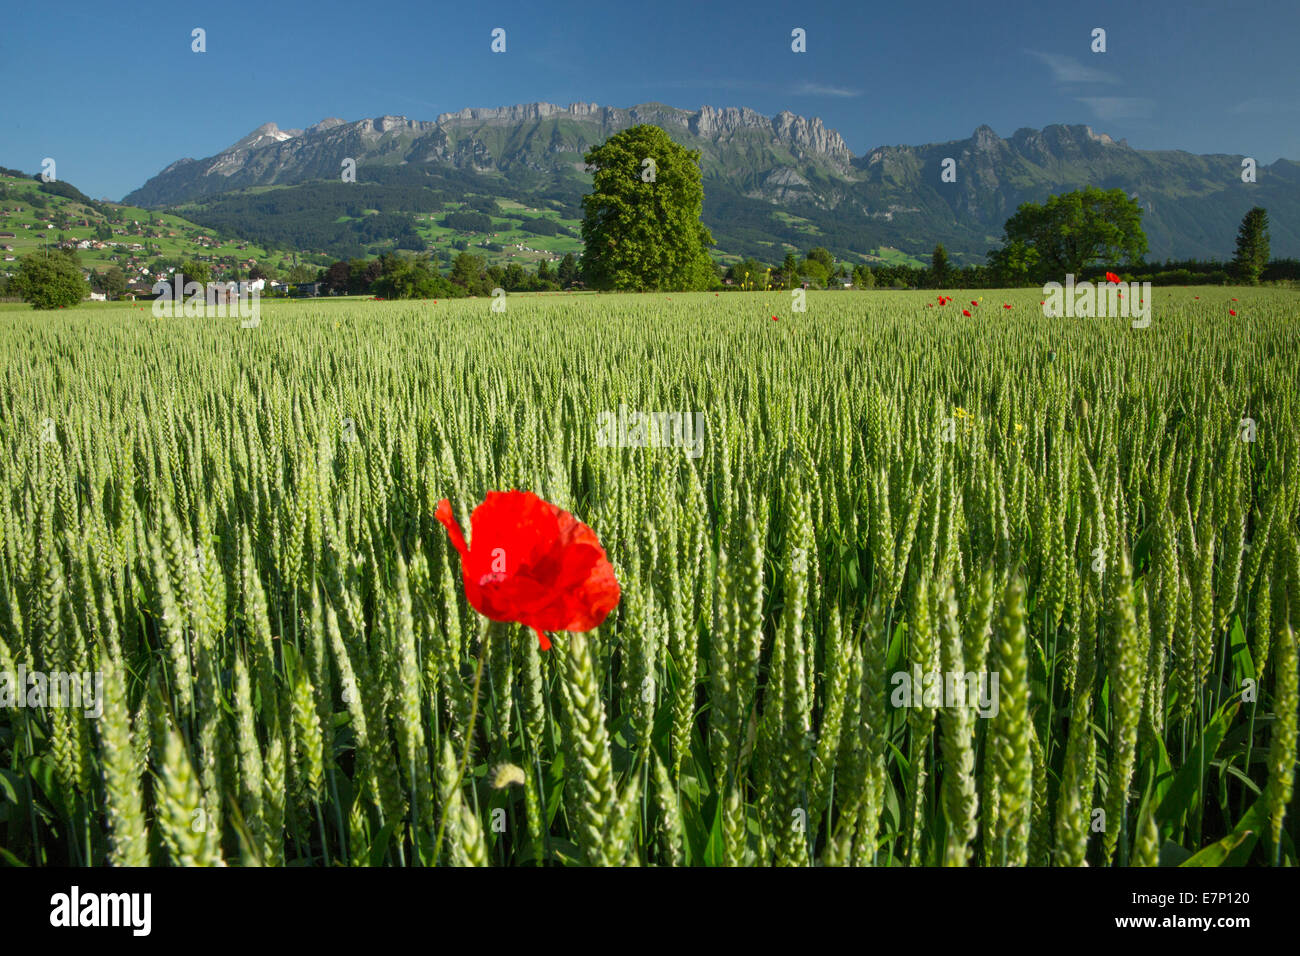 Rhine Valley, wheat field, poppy, Alpstein, Kreuzberge, flower, flowers, agriculture, SG, canton St. Gallen, Rhine Valley, Switz Stock Photo